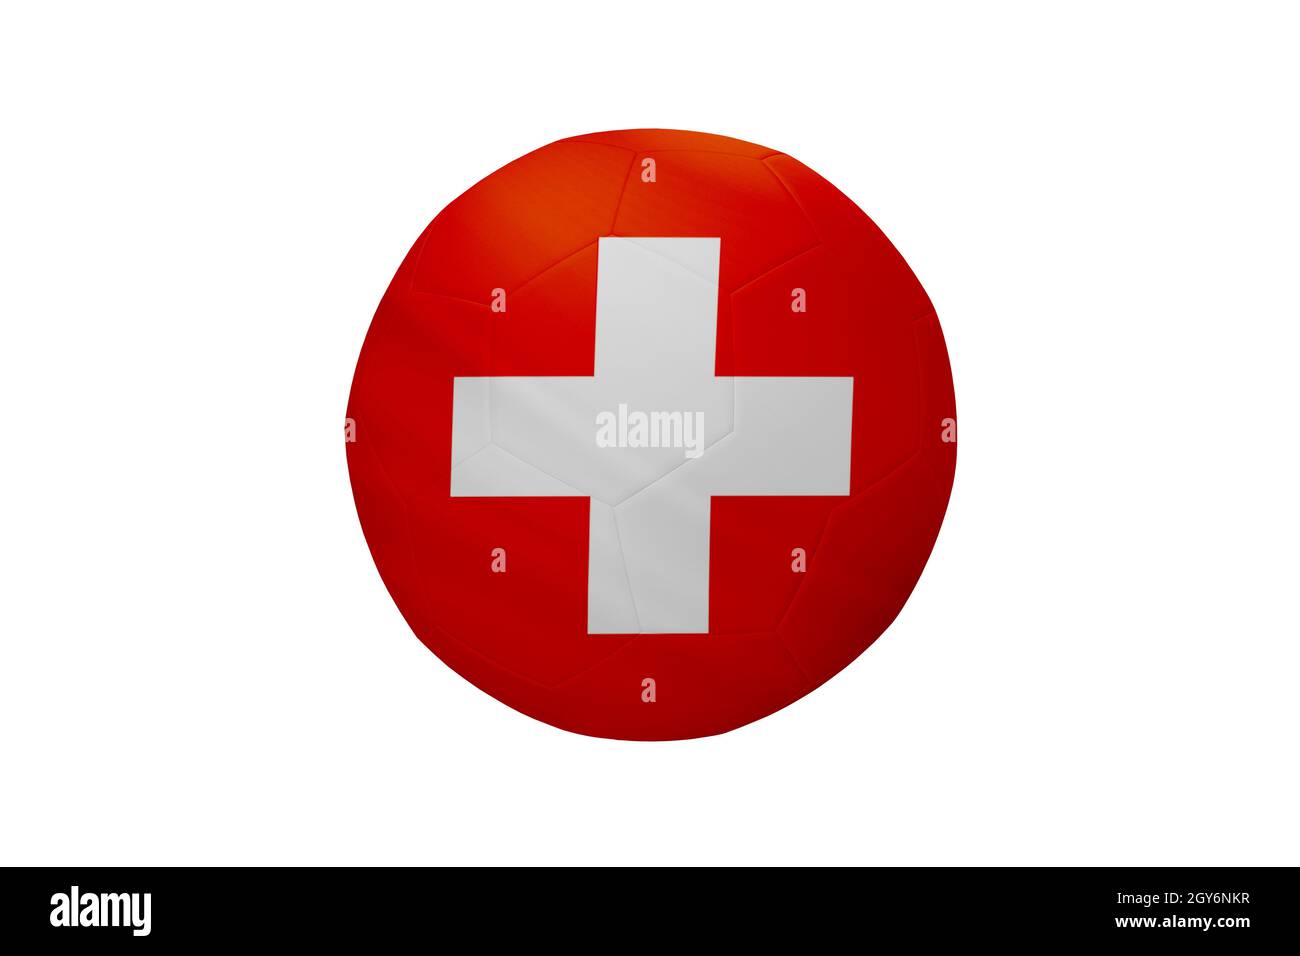 Football aux couleurs du drapeau suisse isolé sur fond blanc. Dans une image de championnat conceptuel soutenant la Suisse. Banque D'Images